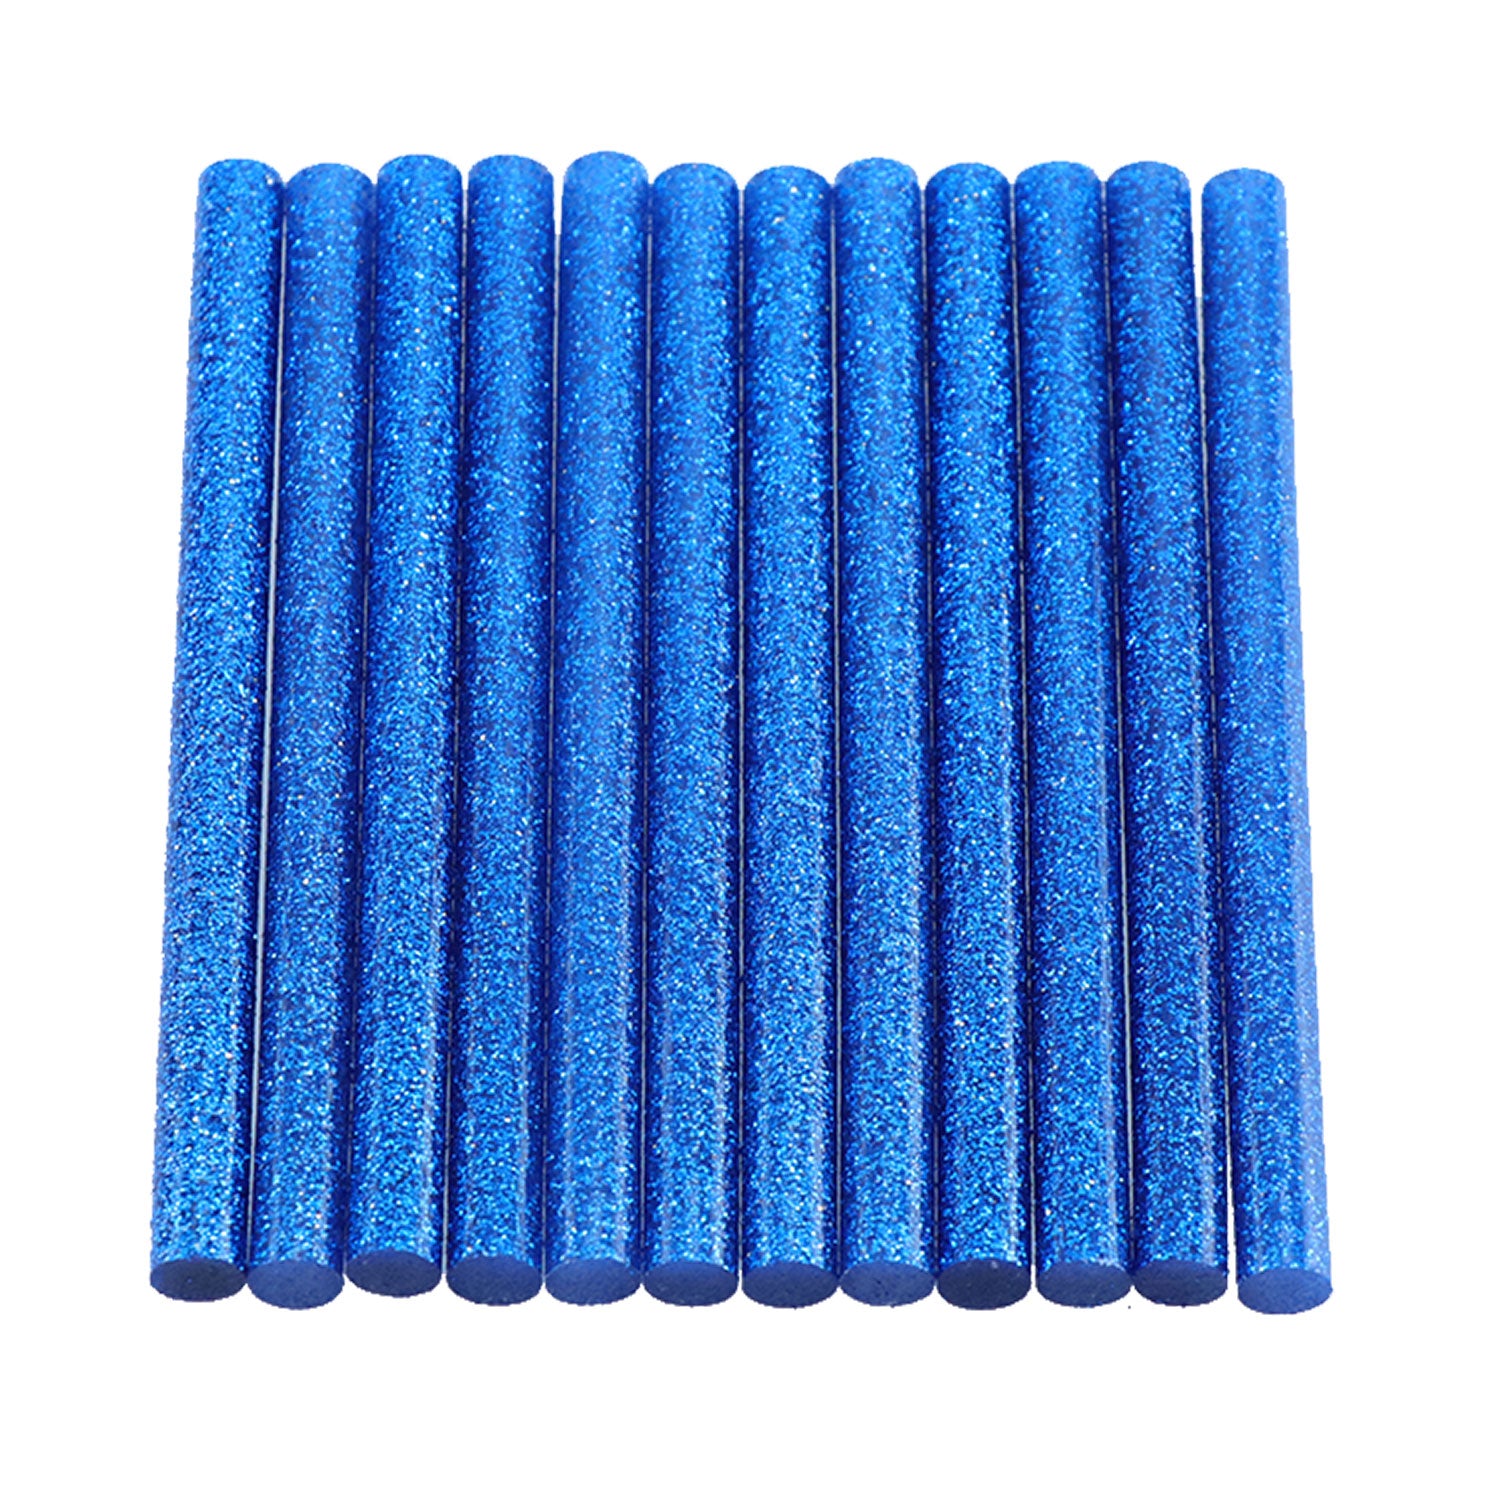 Surebonder Gl-12B Mini (5/16 inch) Blue Glitter Hot Glue Sticks - 12 Count